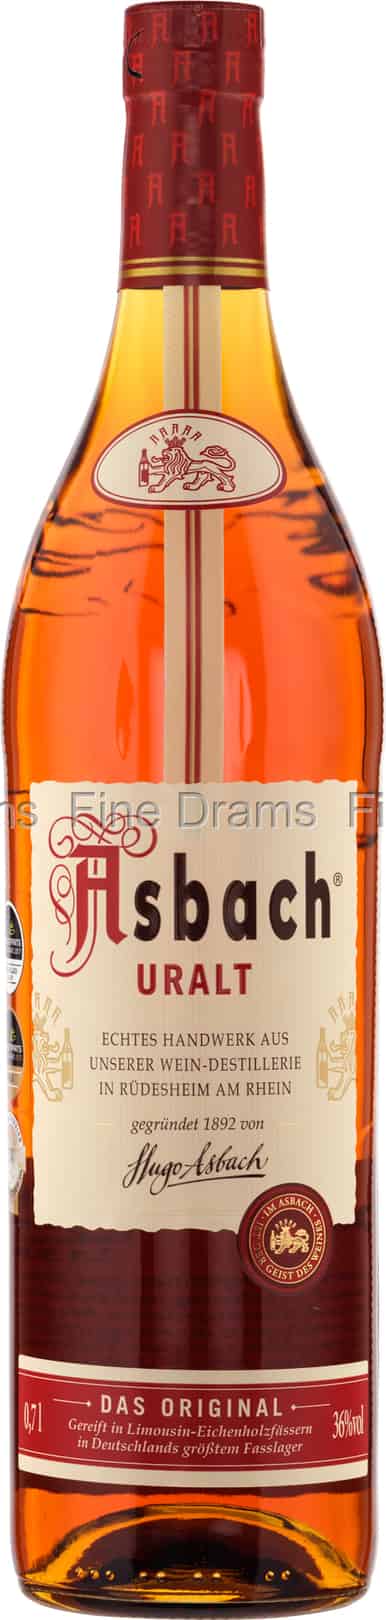 Brandy (36%) Asbach Uralt